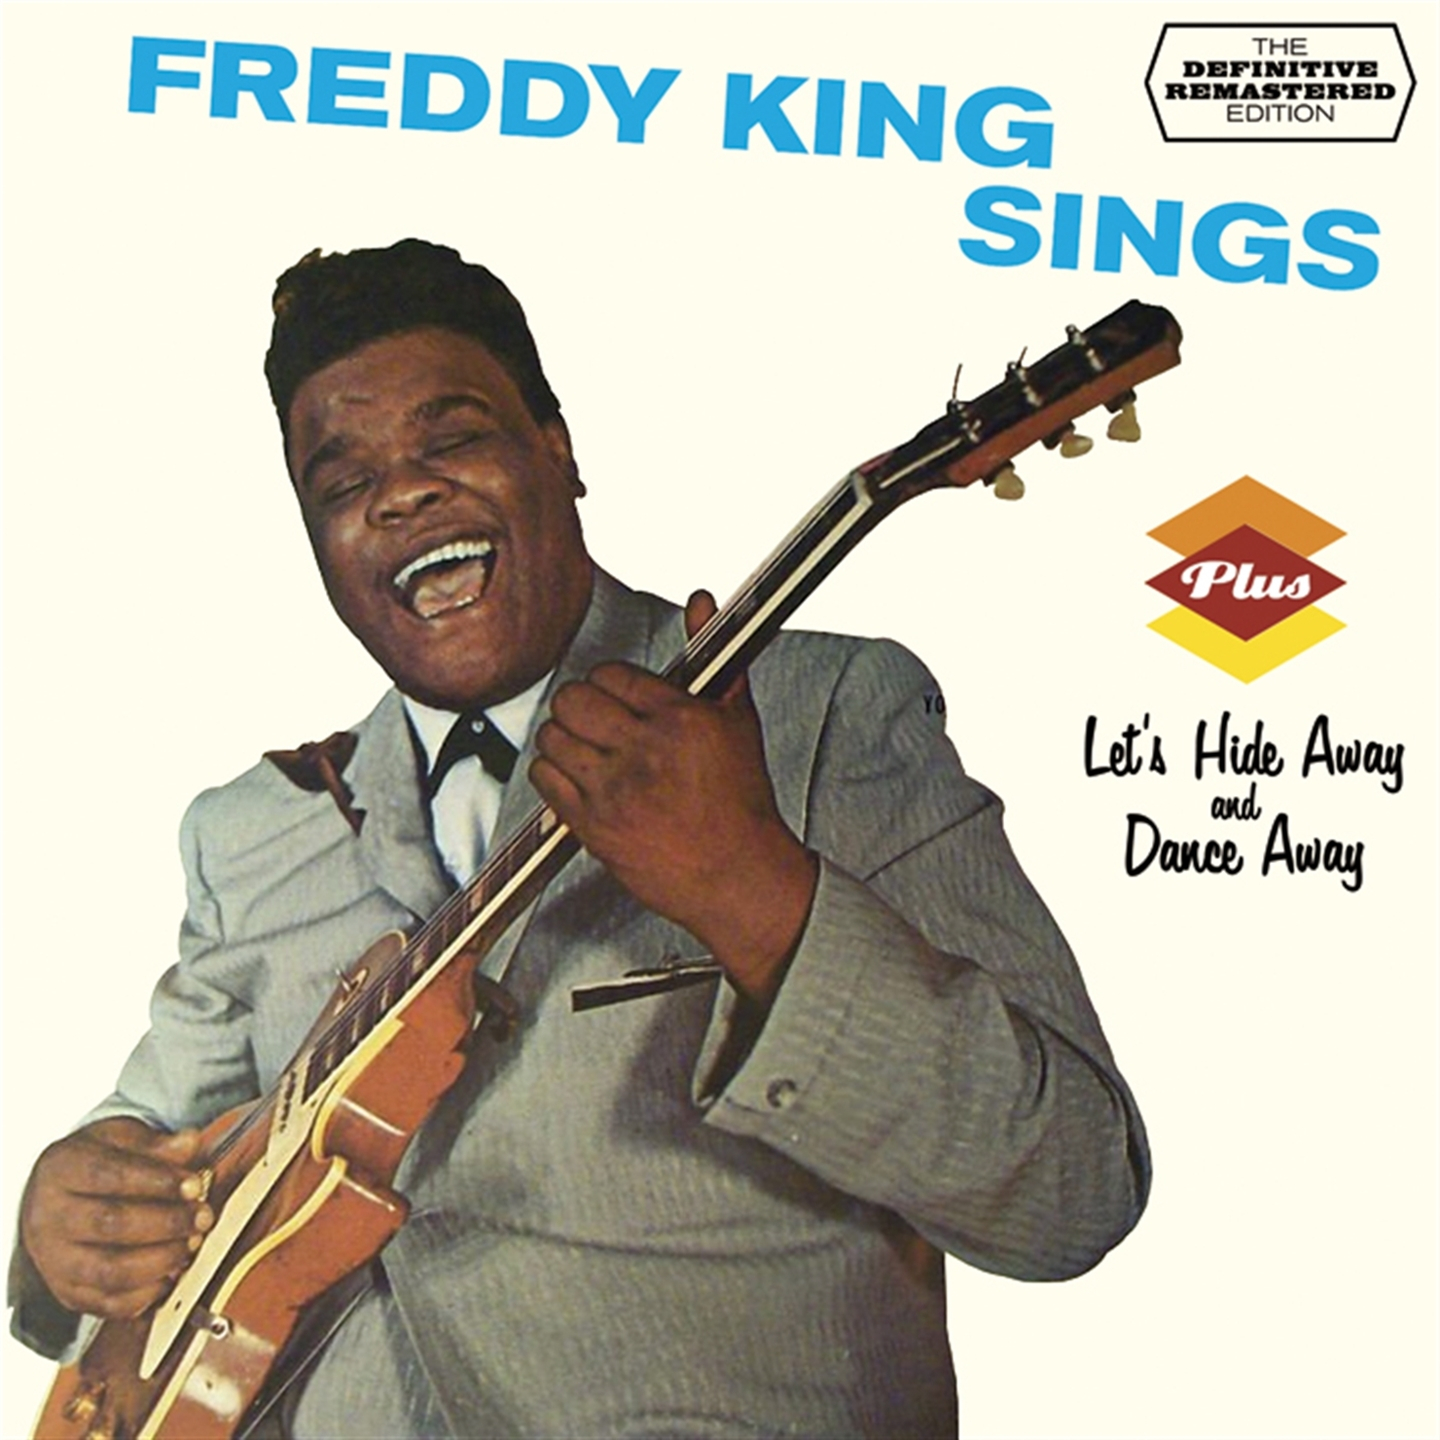 FREDDY KING SINGS (+ LET'S HIDE AWAY AND DANCE AWAY)